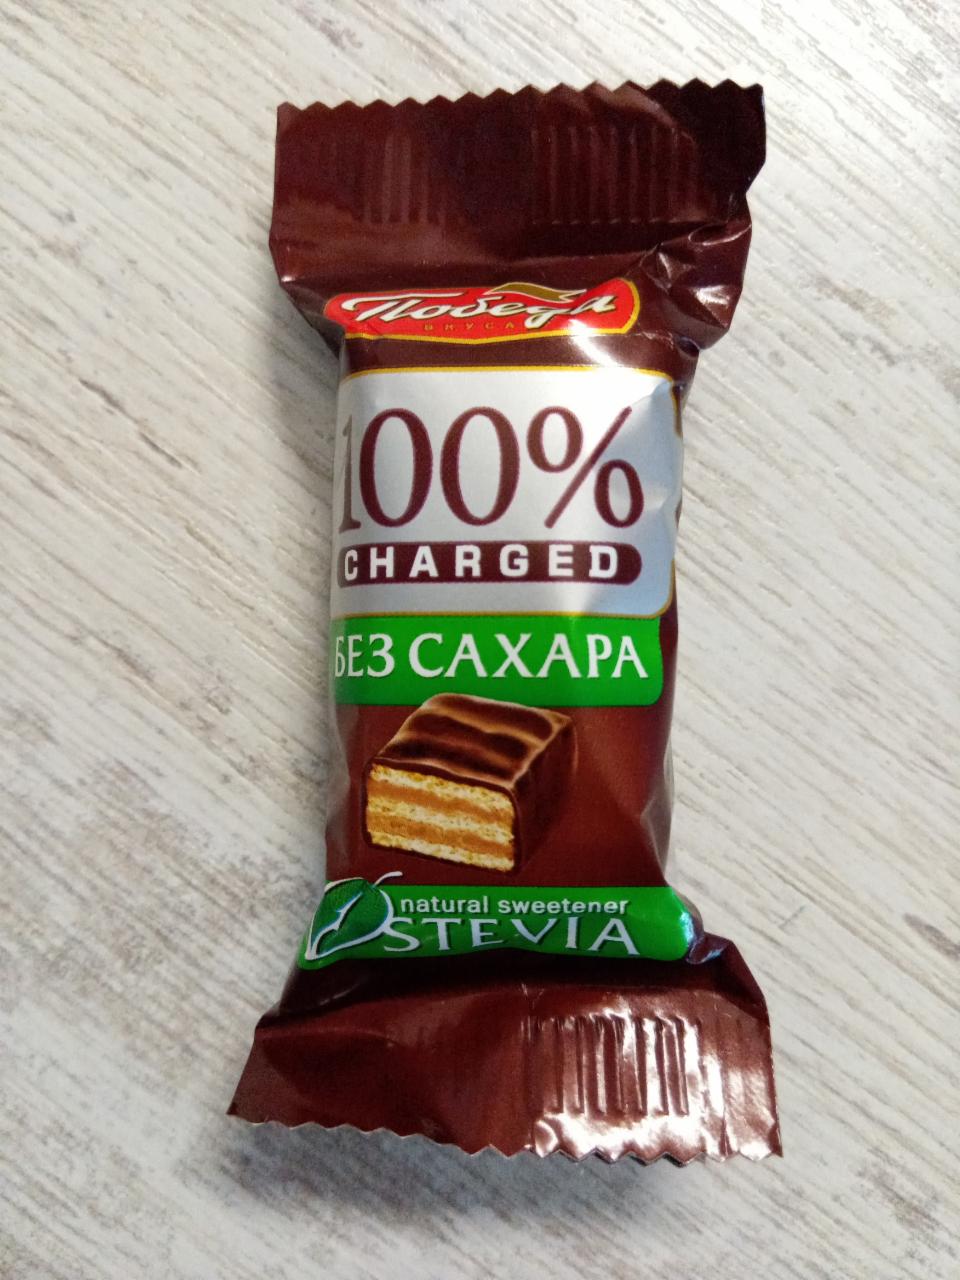 Фото - Вафельные конфеты в горьком шоколаде без сахара Победа вкуса